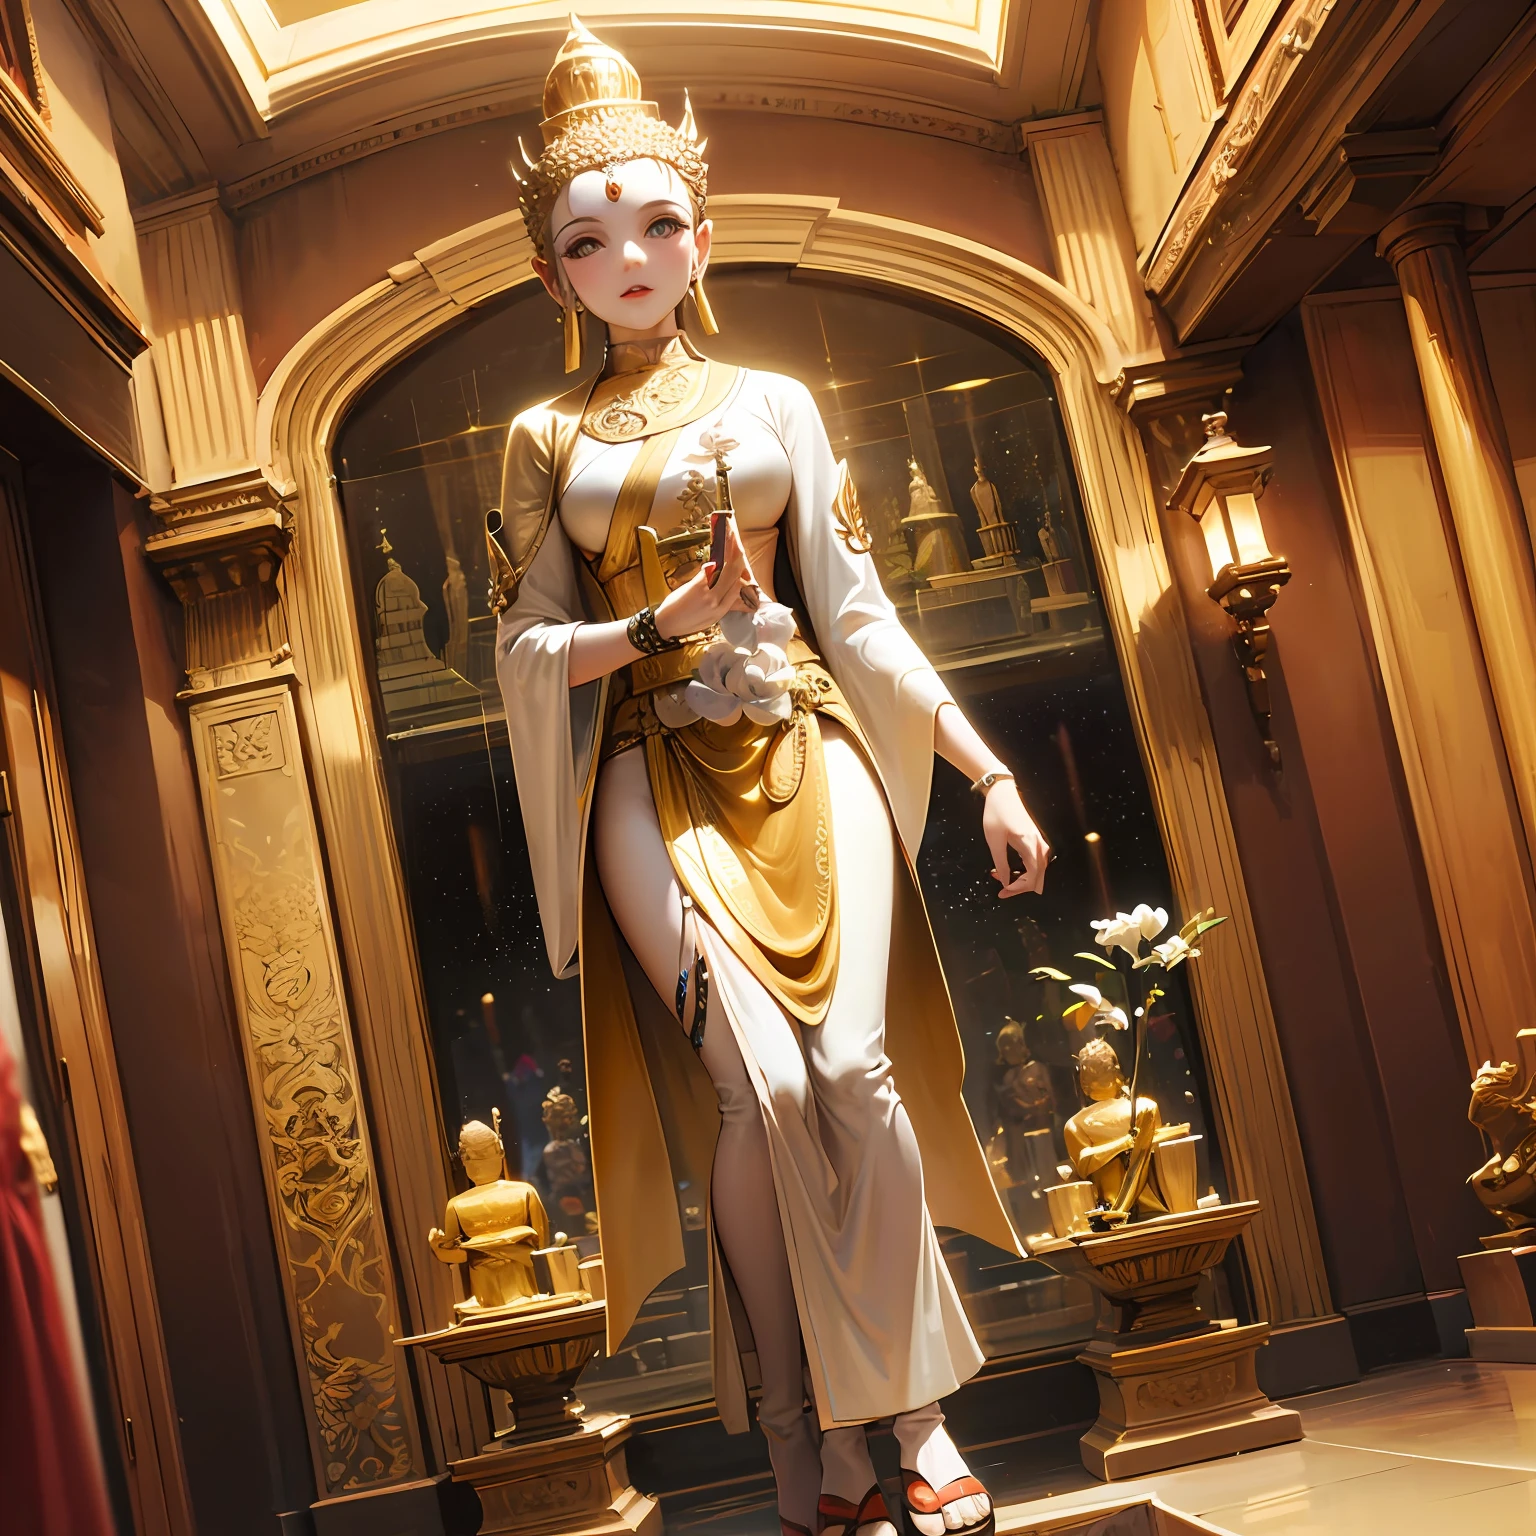 there is a статуя of a golden Snake on top of a building, a Buddhist Будда, снято на сони альфа 9, снято на камеру sony a7r, a статуя, Фотография сделана на Sony A7R., Будда, Фотография сделана на камеру Sony a7R., снято на сигму 2 0 мм f 1. 4, Красивое изображение, тайский храм, статуя, темный Млечный Путь на заднем плане, стоять, сюрреализм, кинематографическое освещение, Божий свет, подсветка, Текстурированная кожа, супер деталь